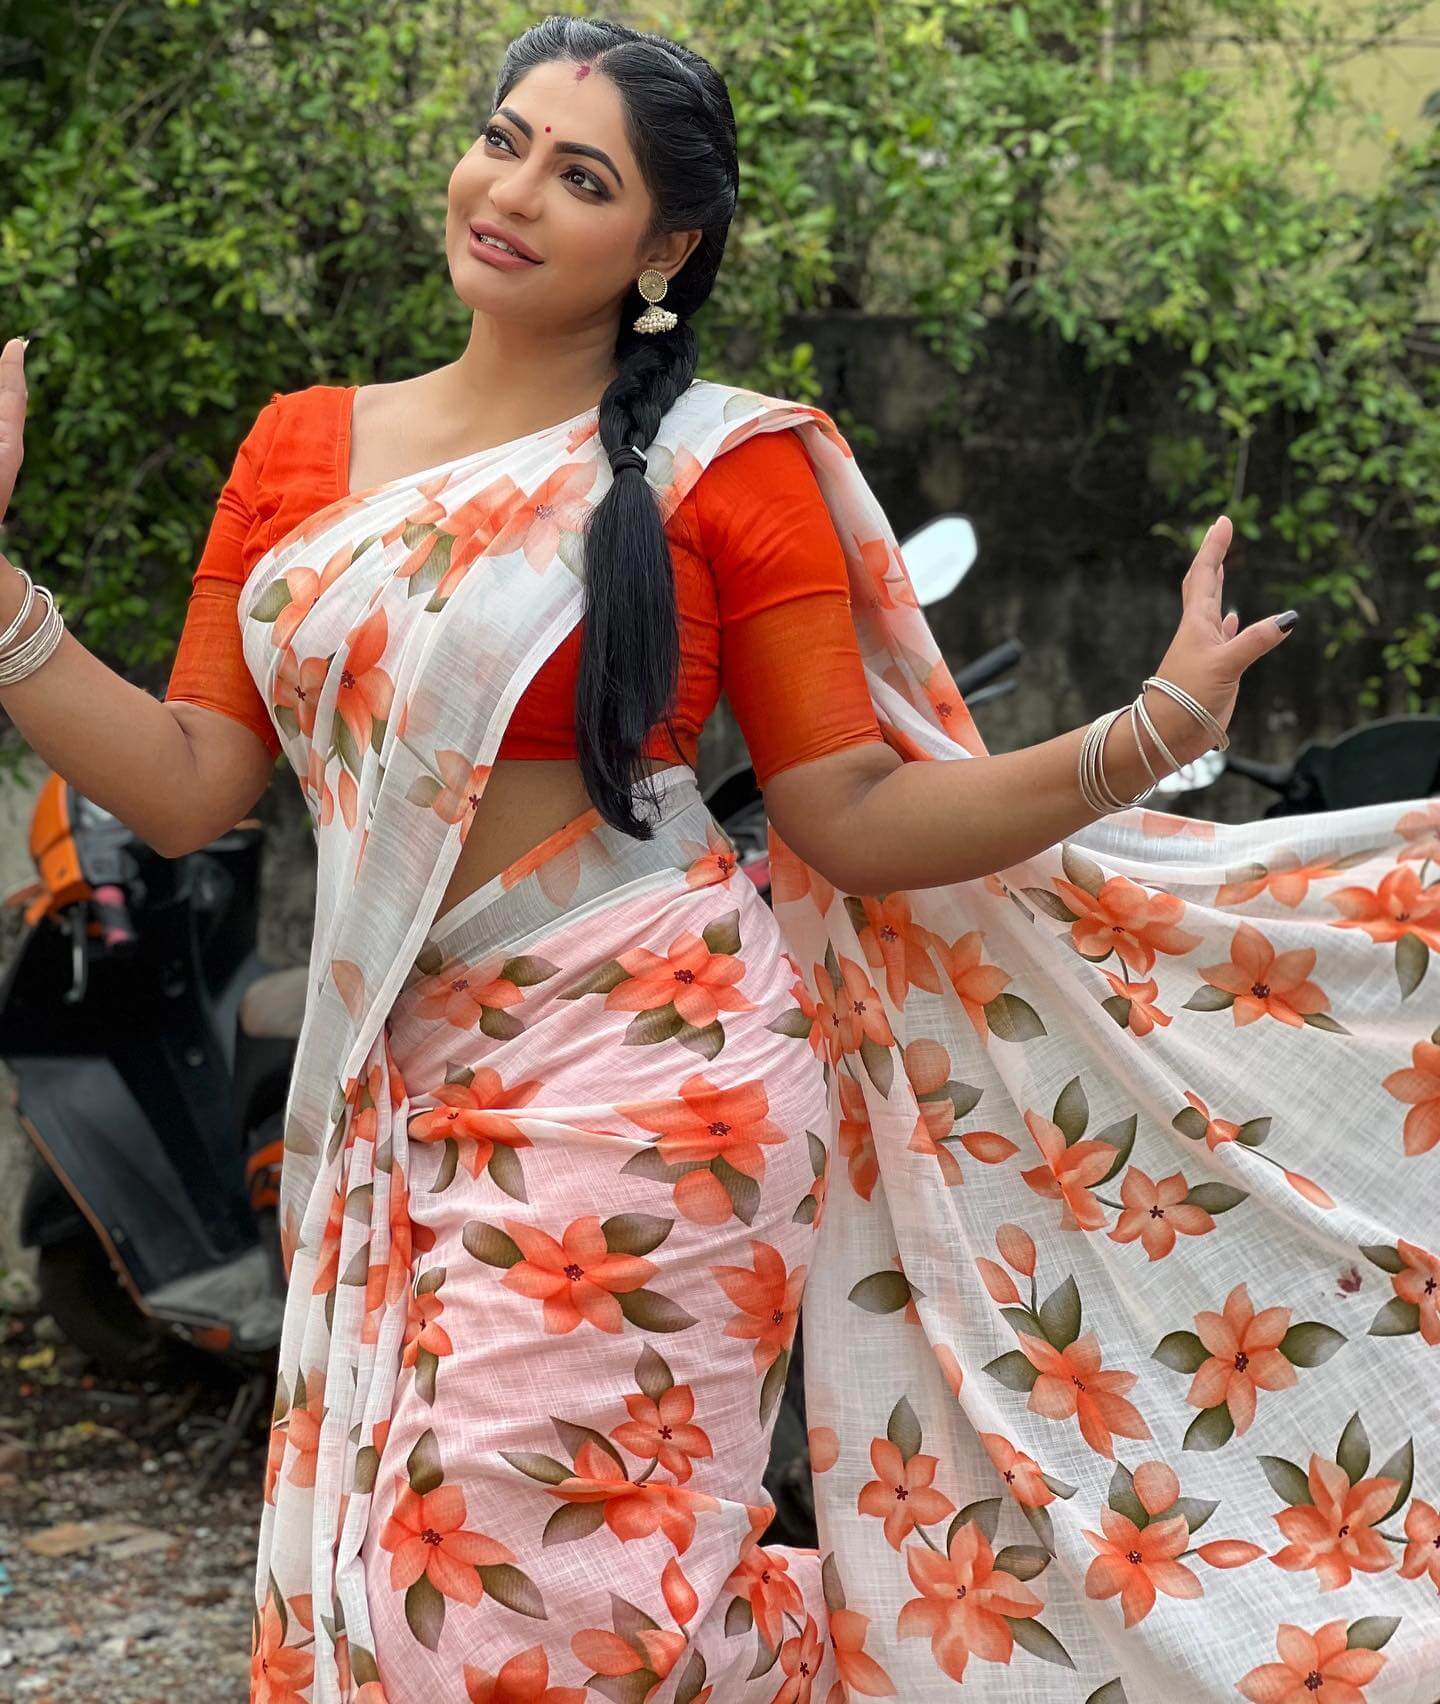 Reshma Pasupuleti Look Simple Yet Beautiful In a White & Orange Floral Printed Saree